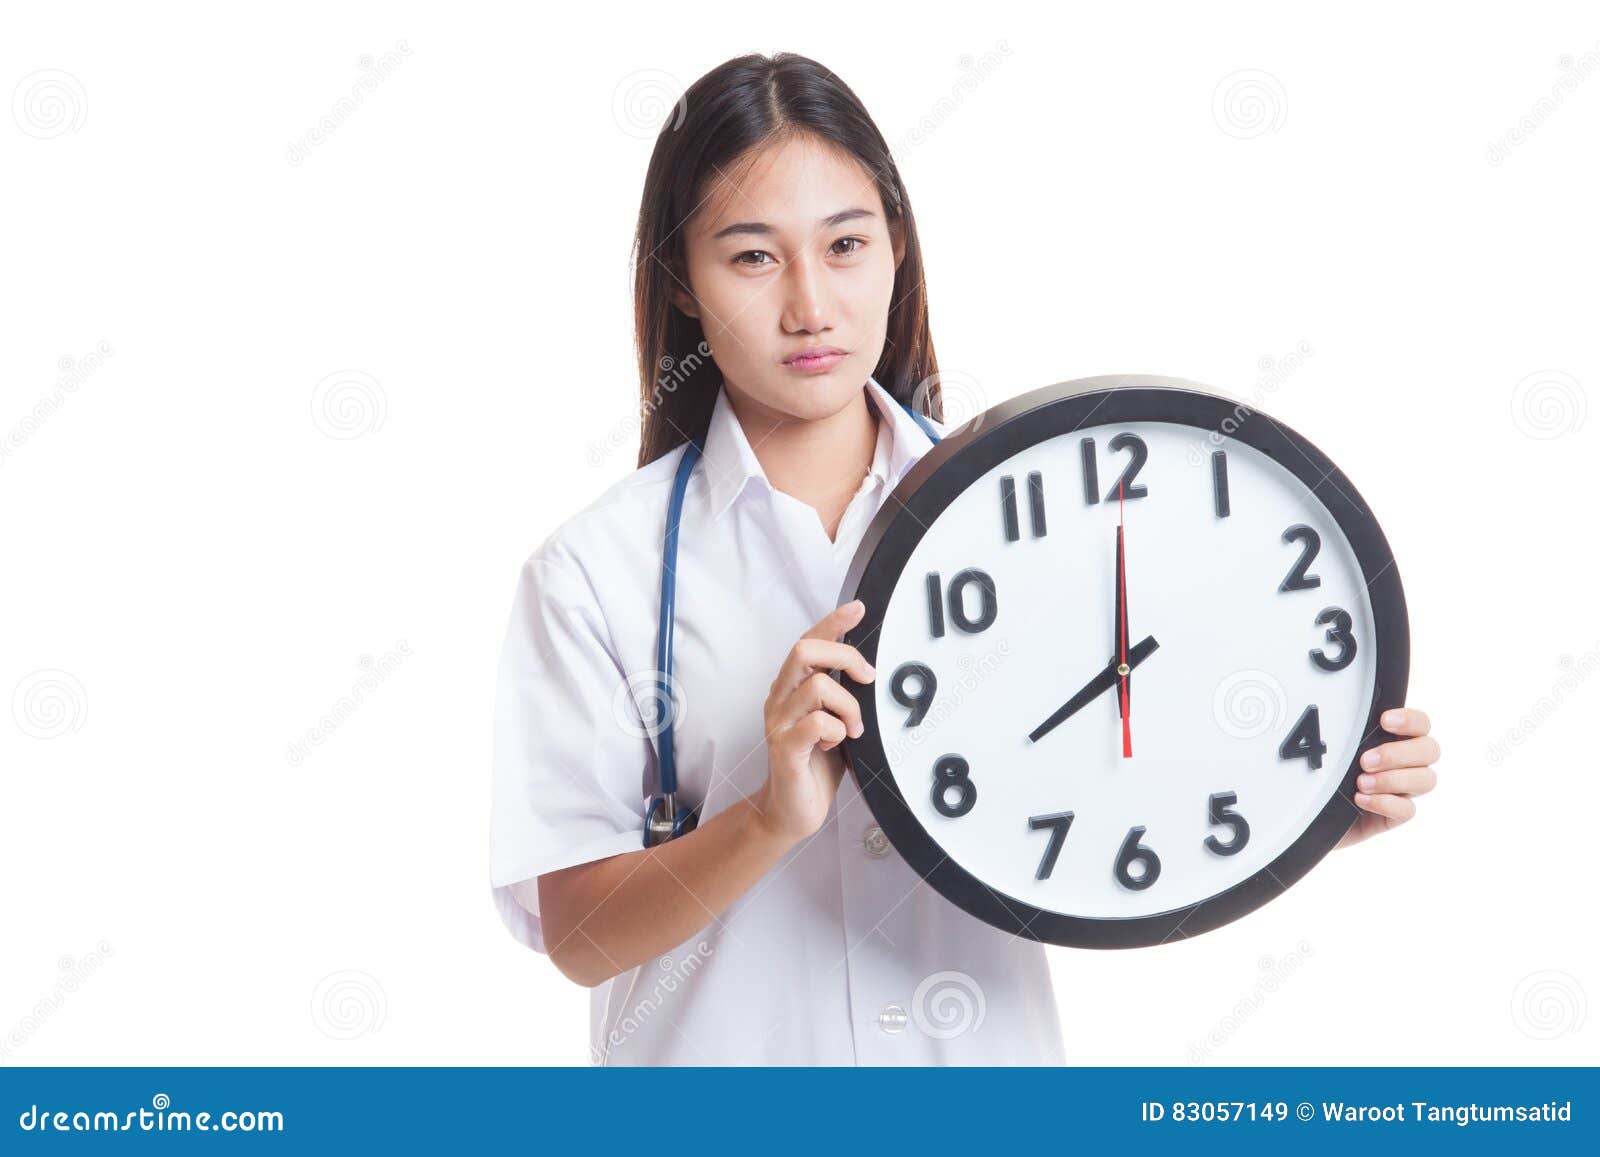 Ματαιωμένος νέος ασιατικός θηλυκός γιατρός με ένα ρολόι που απομονώνεται στο άσπρο υπόβαθρο